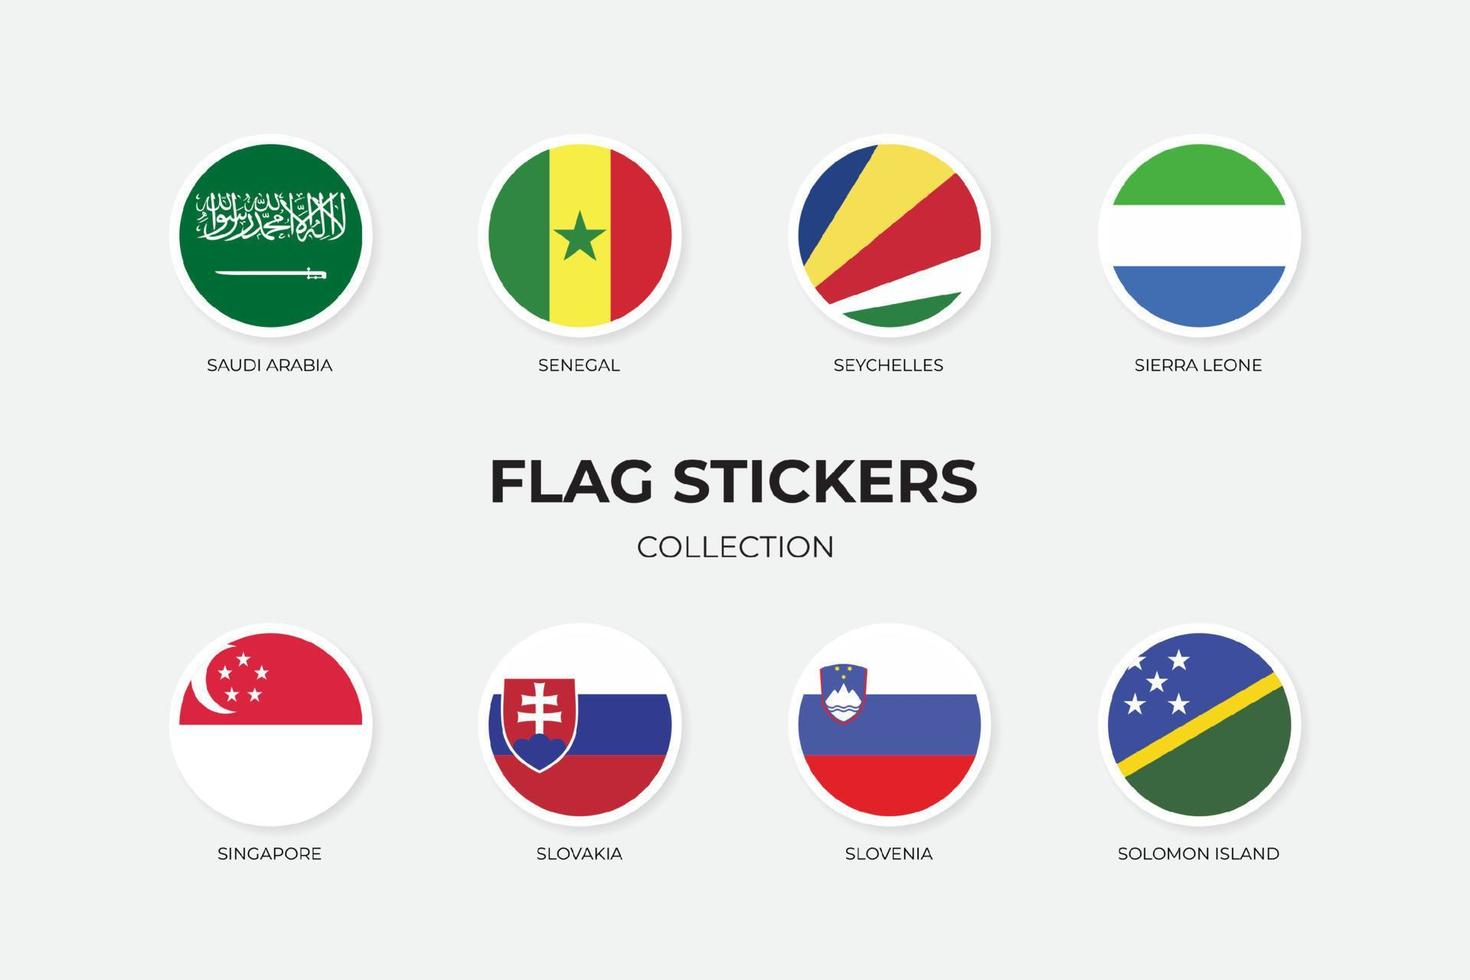 flaggklistermärken för Saudiarabien, Senegal, Seychellerna, Sierra leono, Singapore, Slovakien, Slovenien, Salomonön vektor